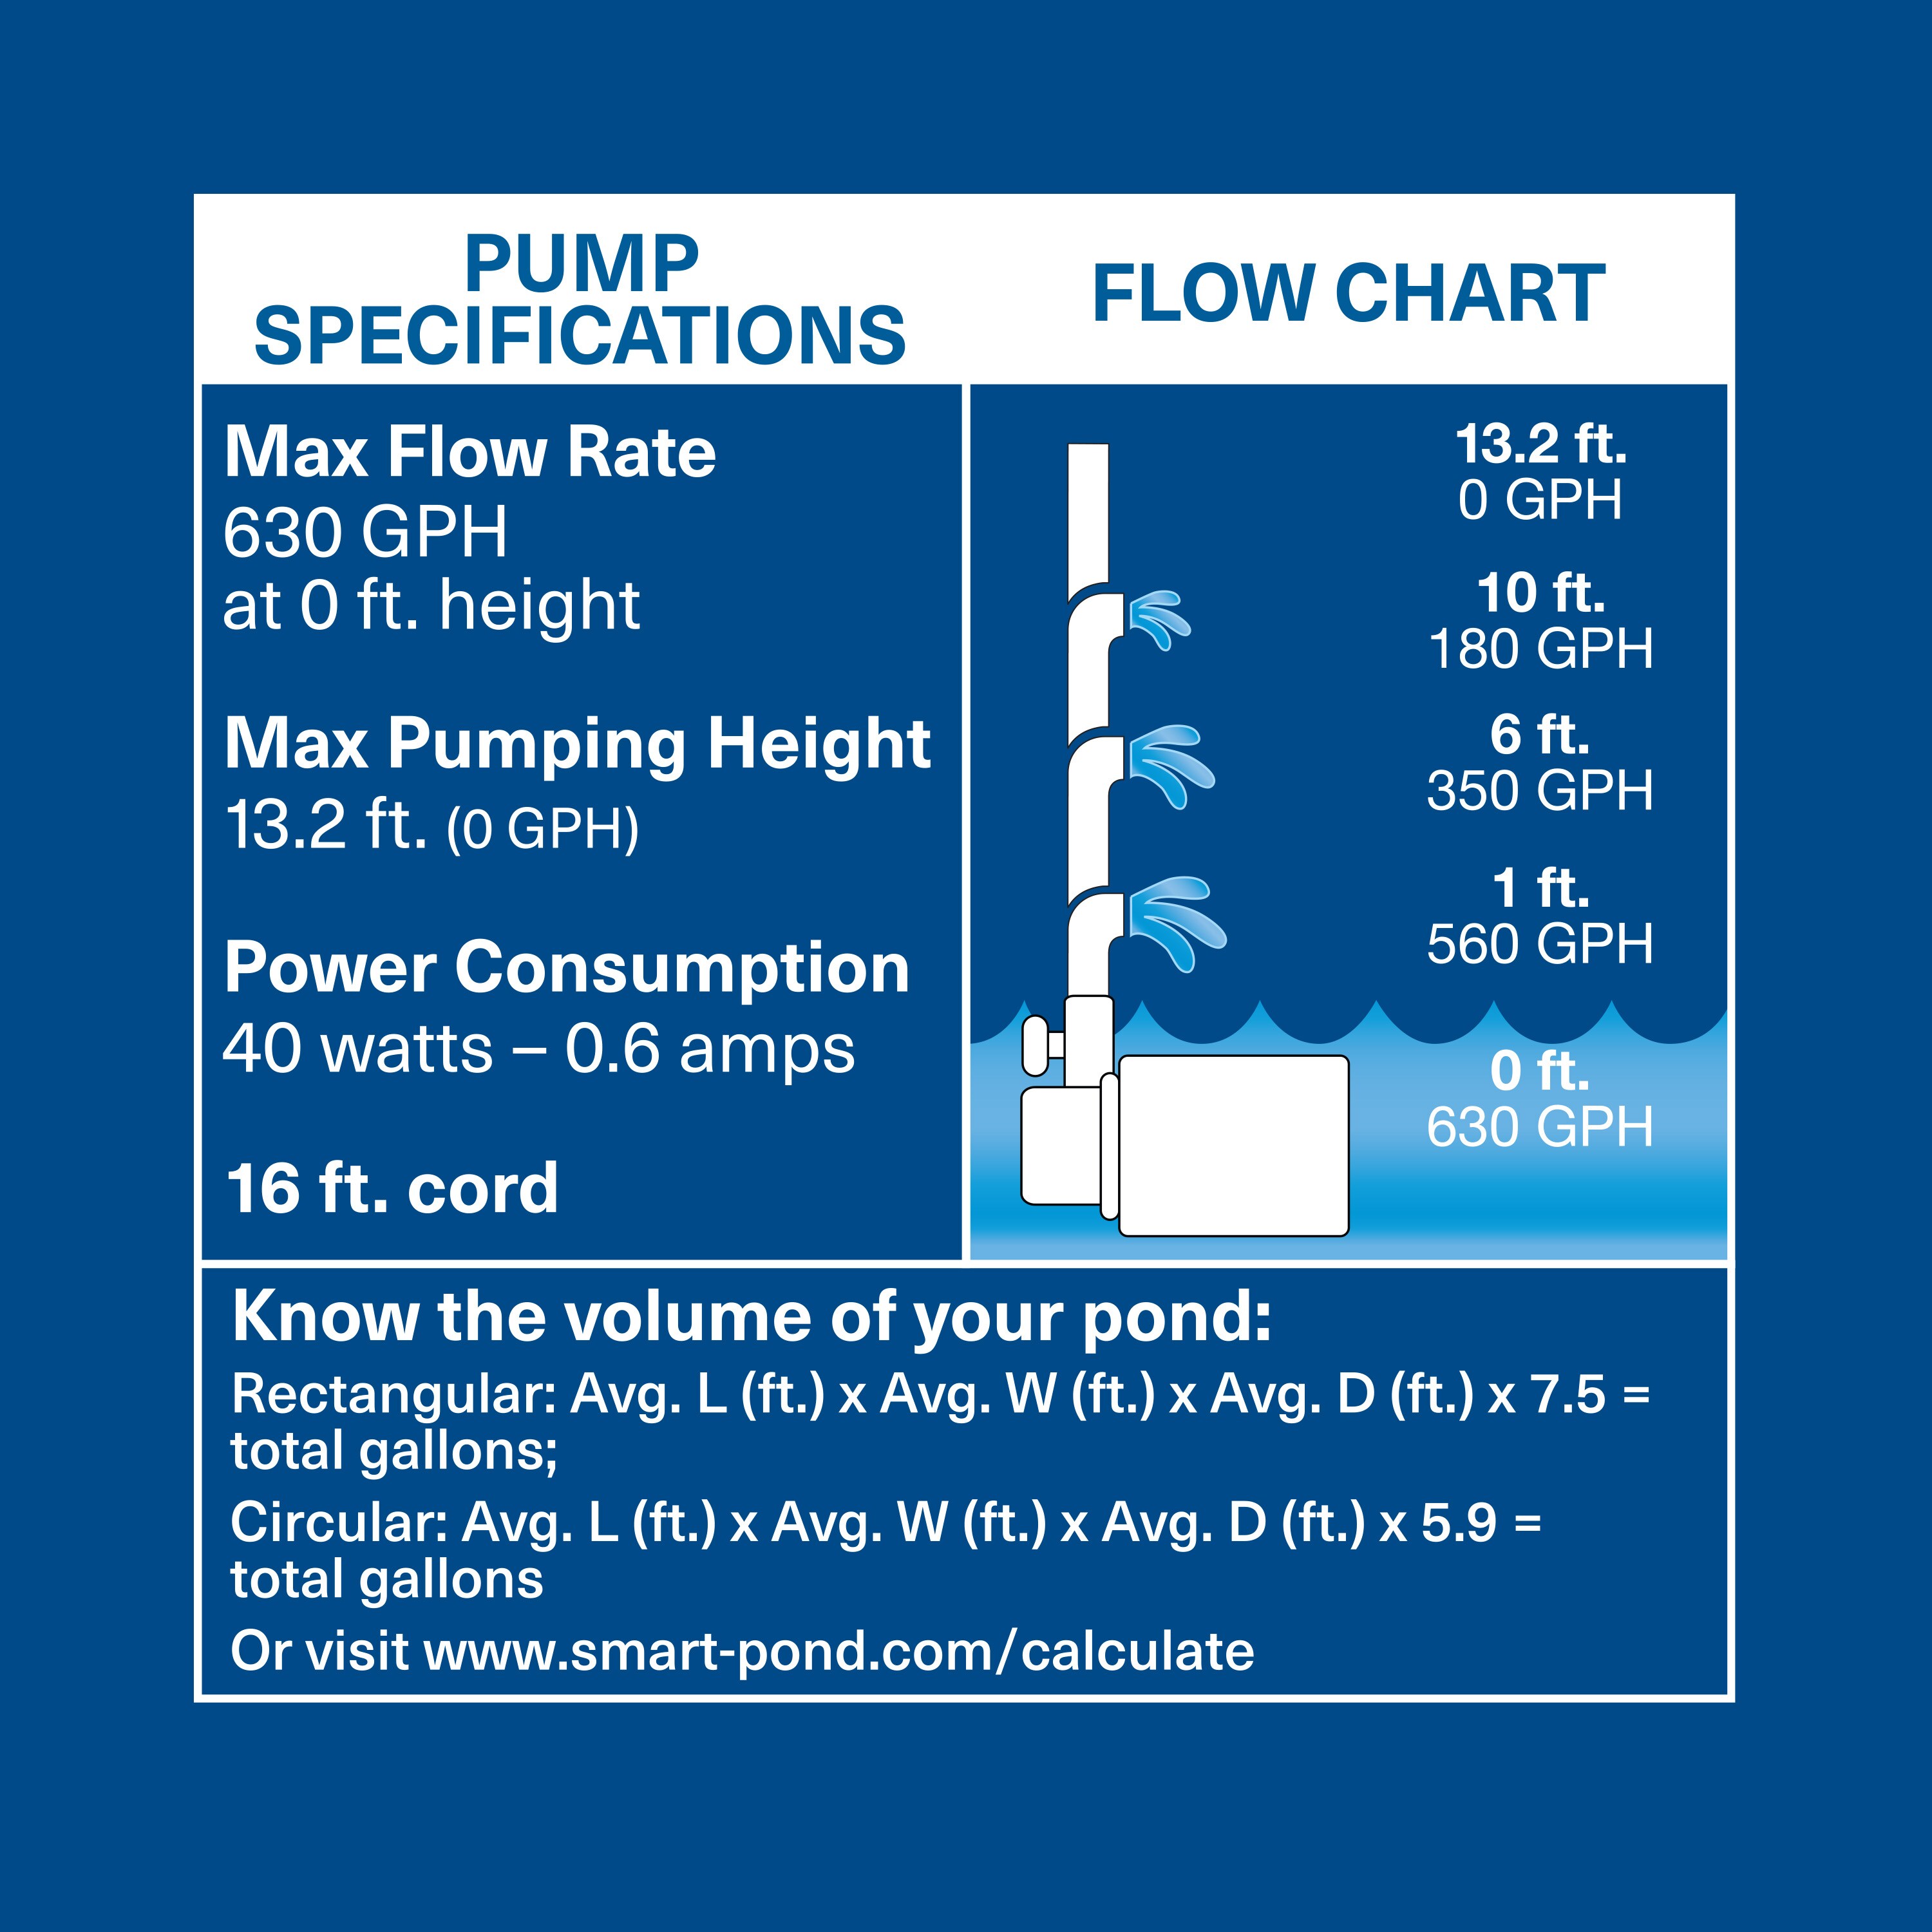 Pompe a eau électrique - FUXTEC FX-GP1600 - 600W débit 3100L/h